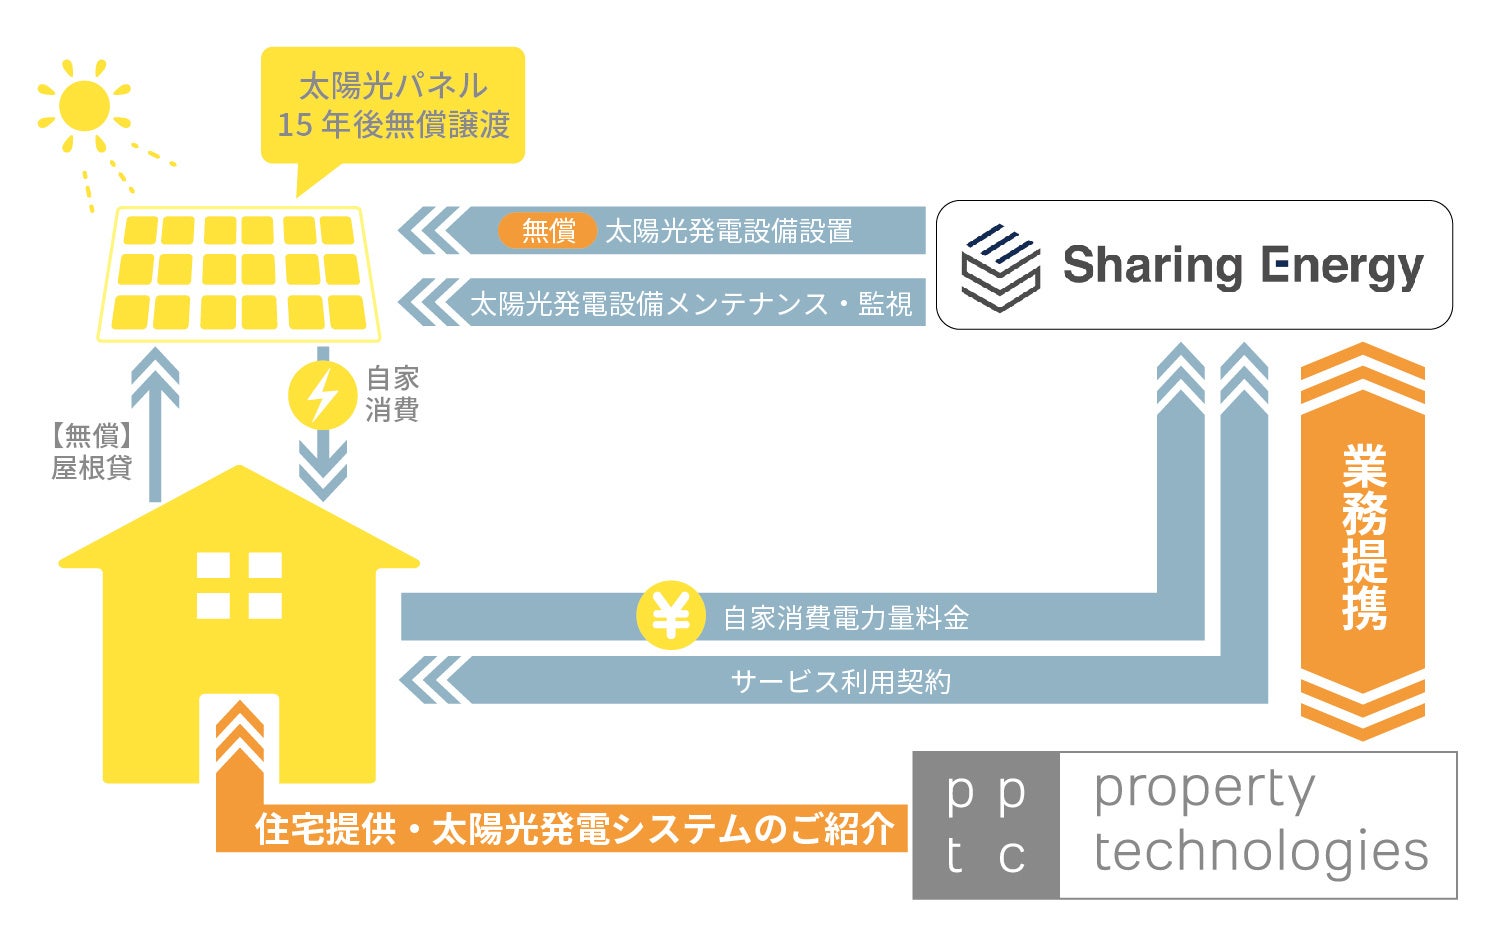 シェアリングエネルギーとpptcグループが業務提携で基本合意のサブ画像1